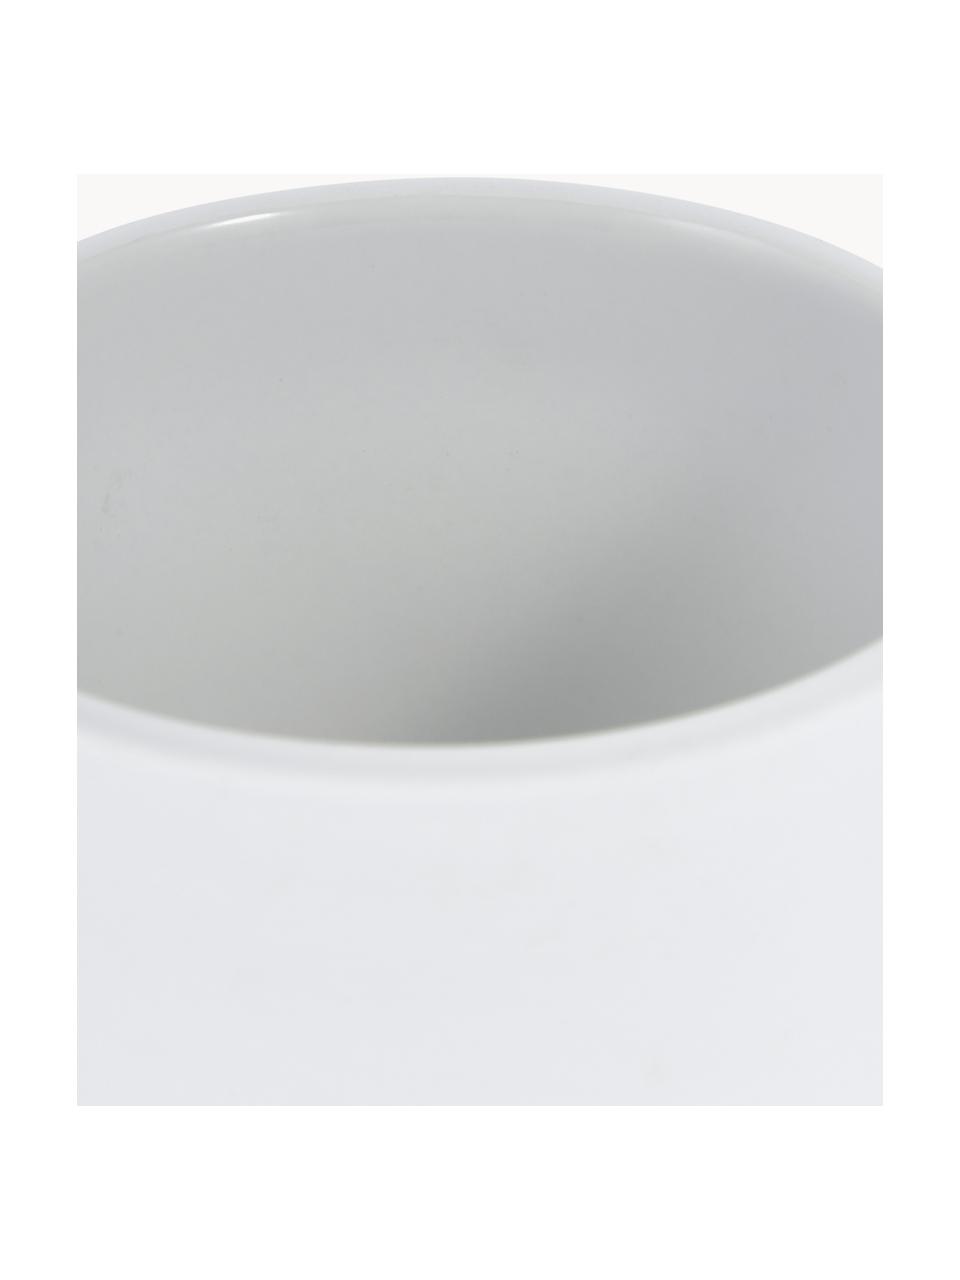 Zeepdispenser Ume met zacht aanvoelend oppervlak, Houder: keramiek overtrokken met , Wit, Ø 8 x H 13 cm